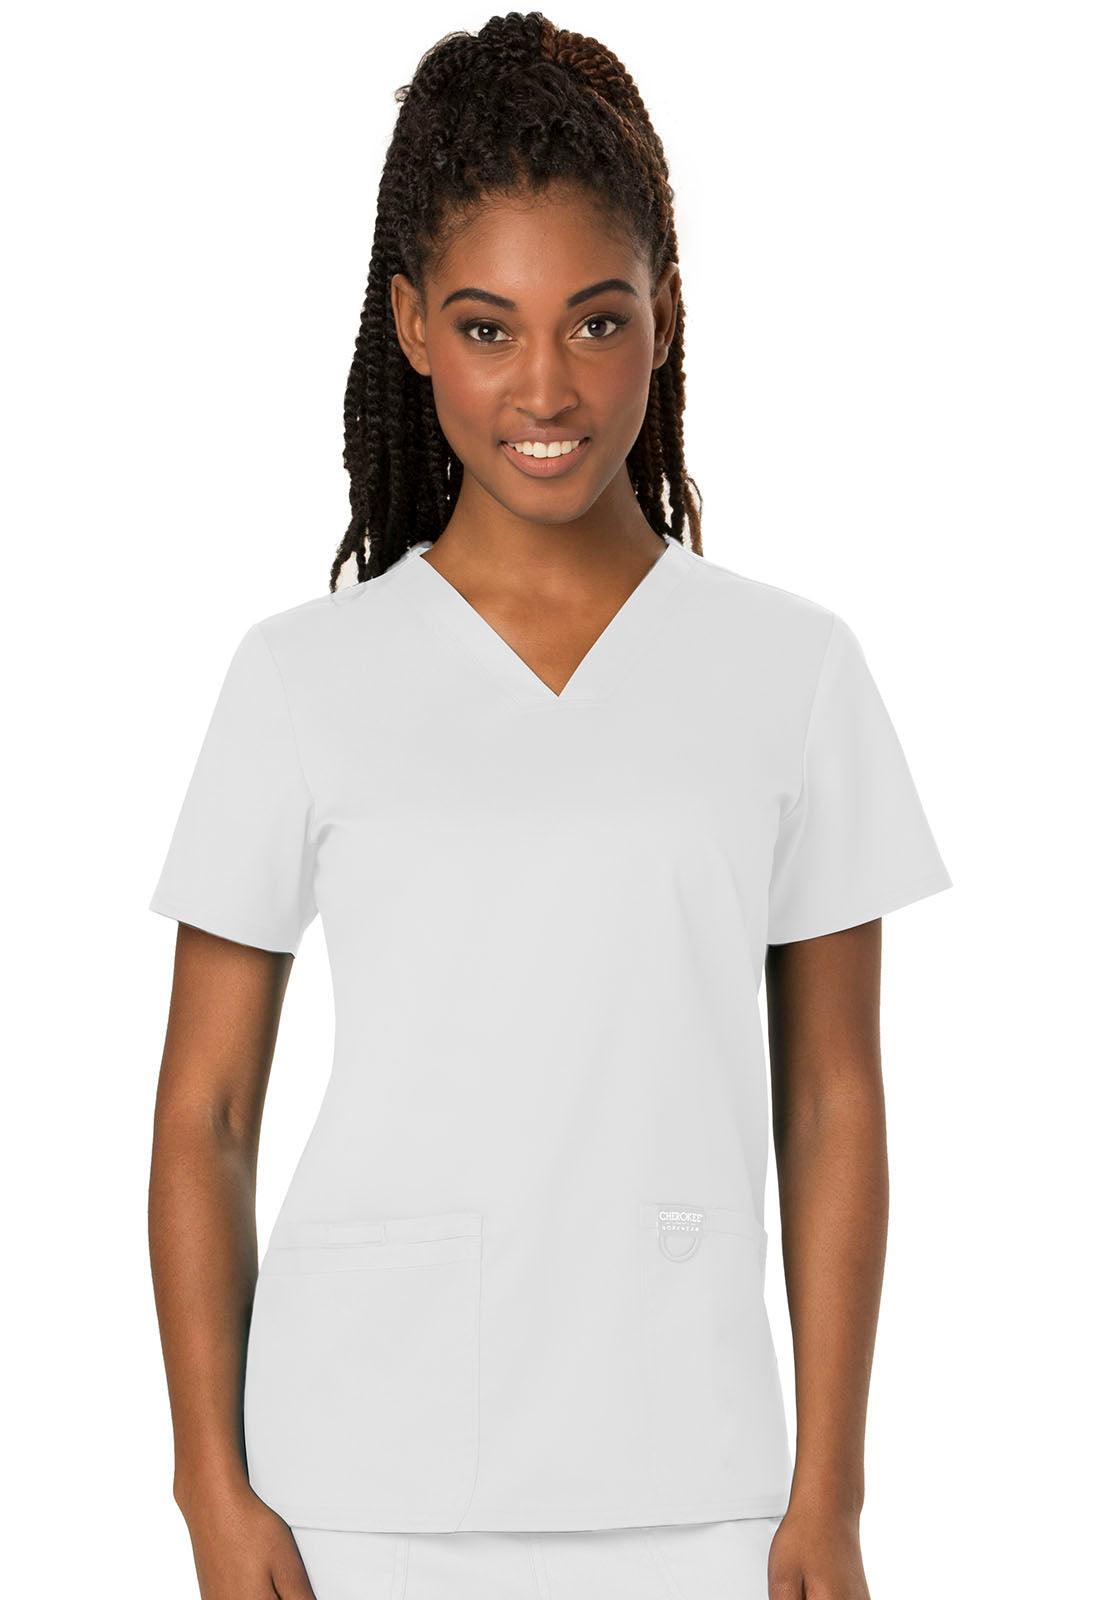 Female V-Neck Top W/ Embroidered Logo (Licensed Practical Nurse Program) - Jay's Uniform